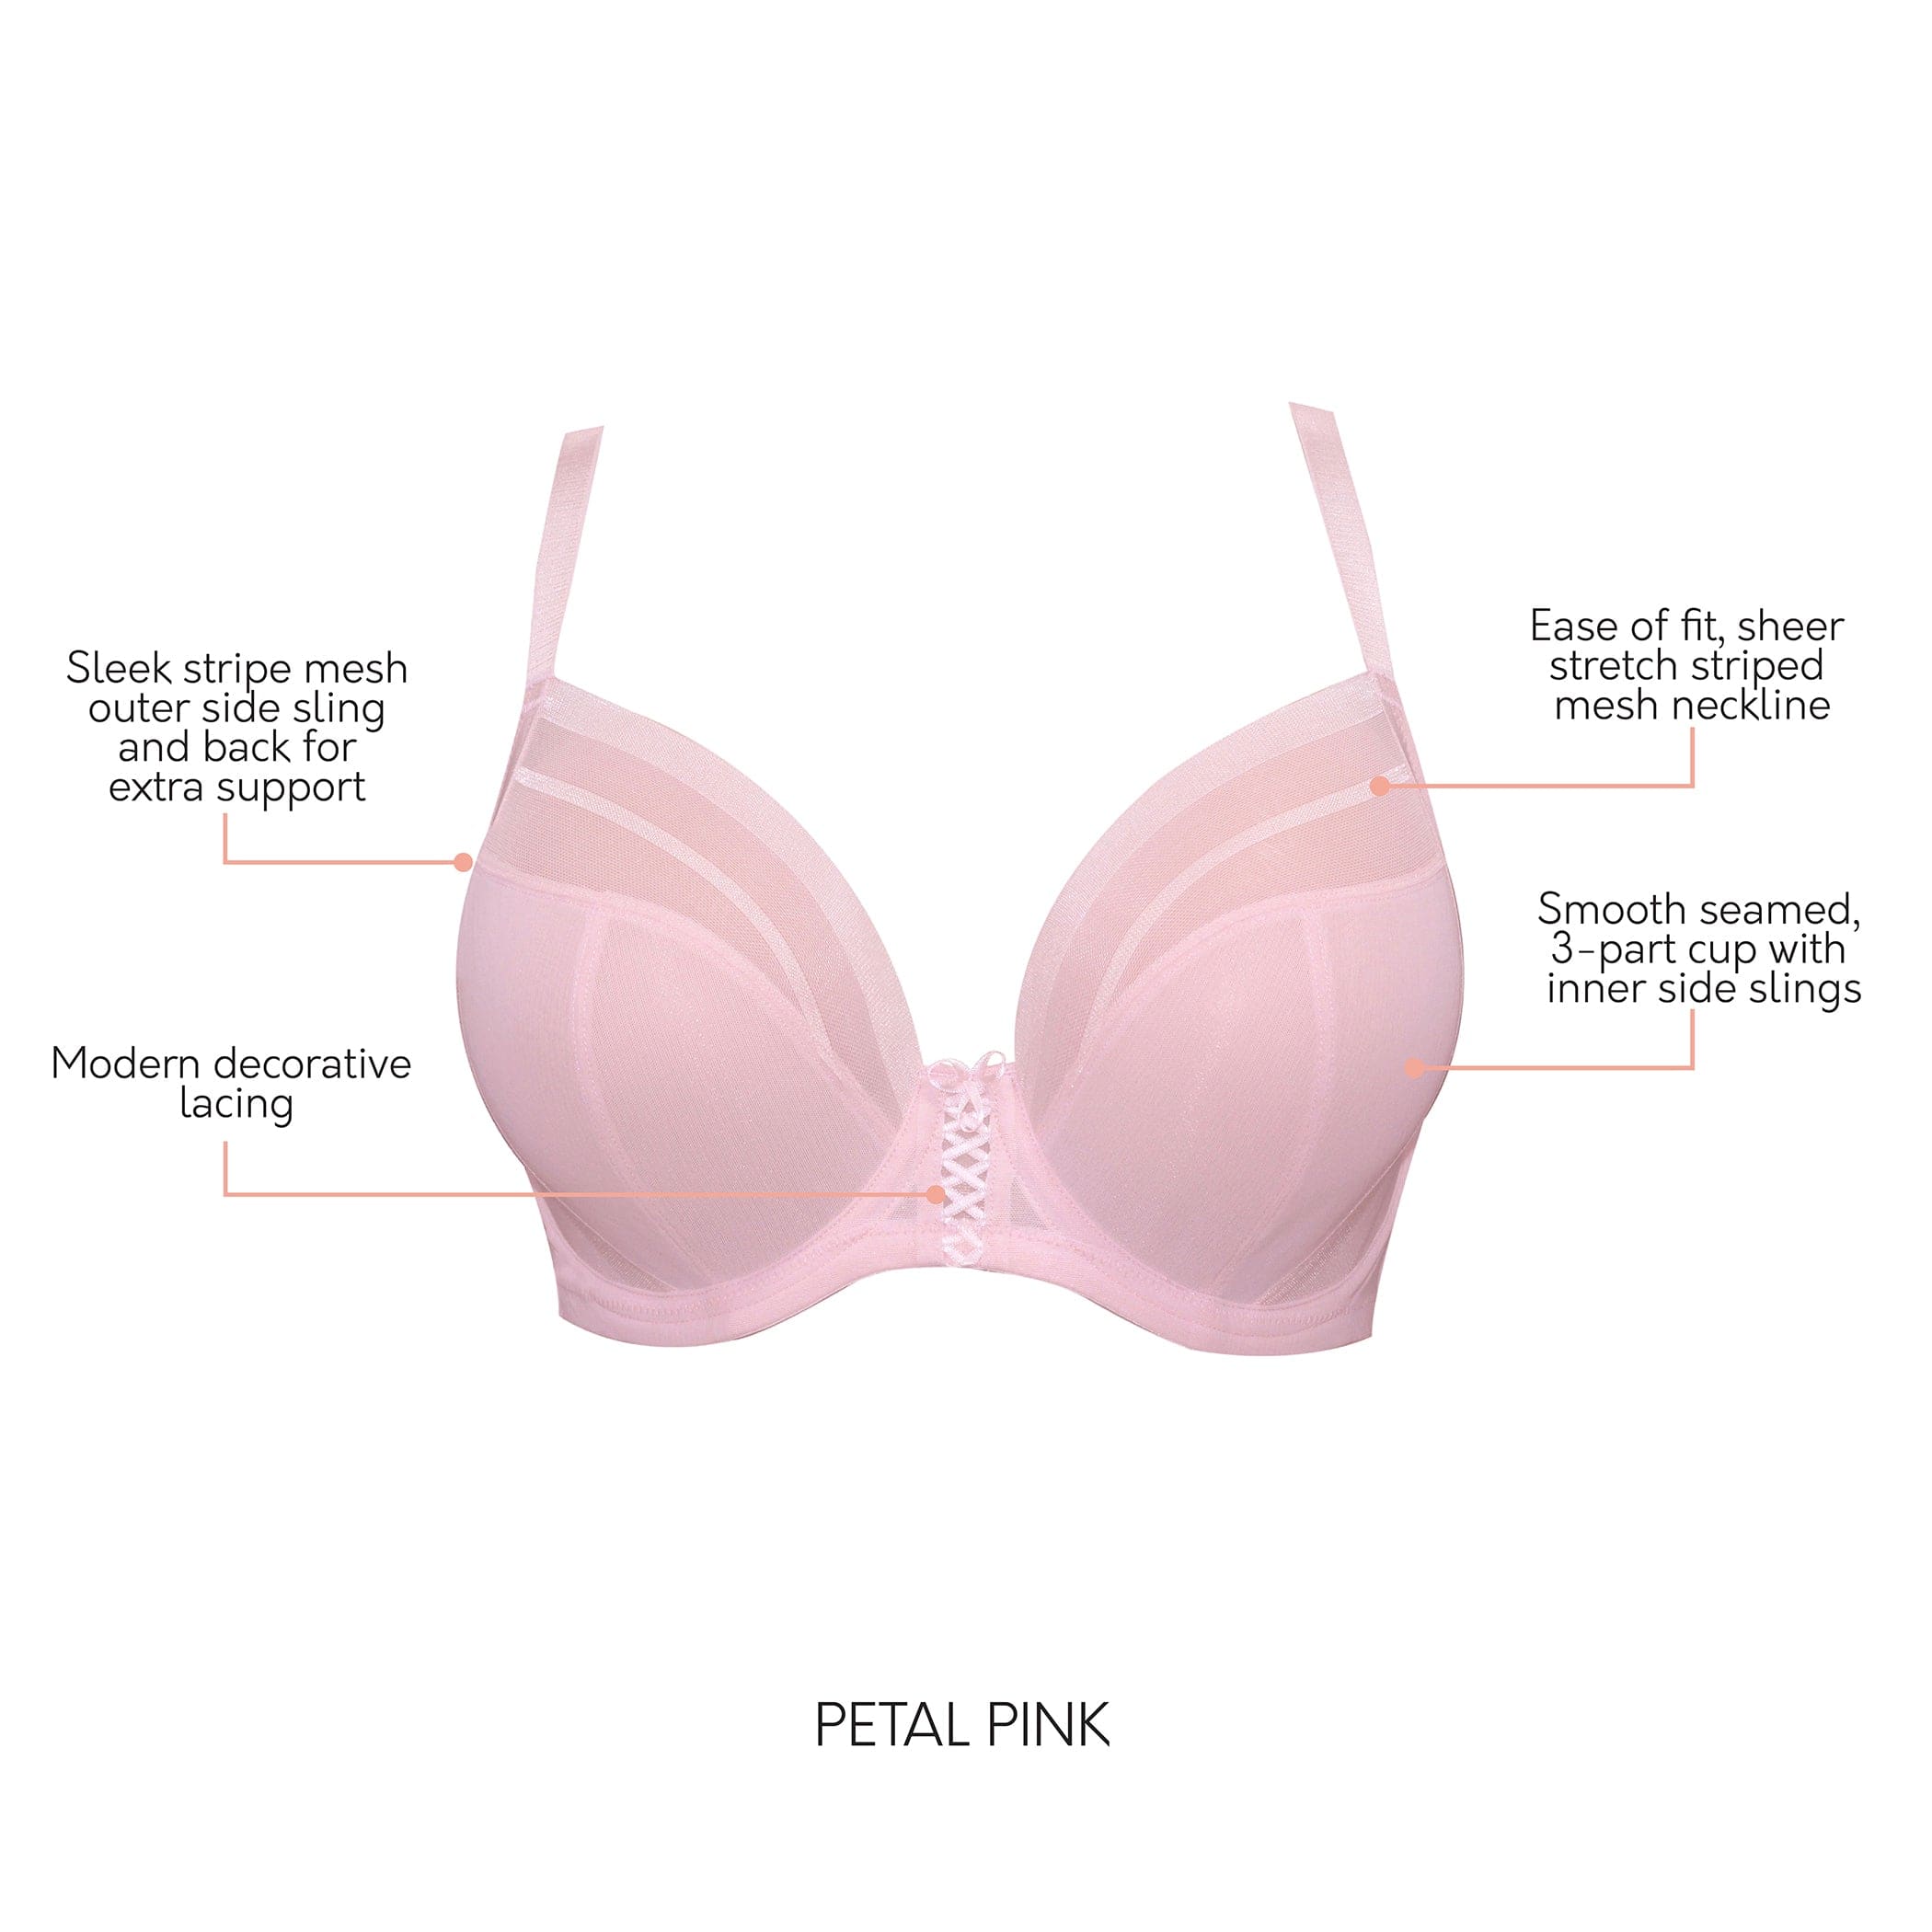 Parfait Women's Shea Plunge Unlined Bra - Petal Pink - 38k : Target